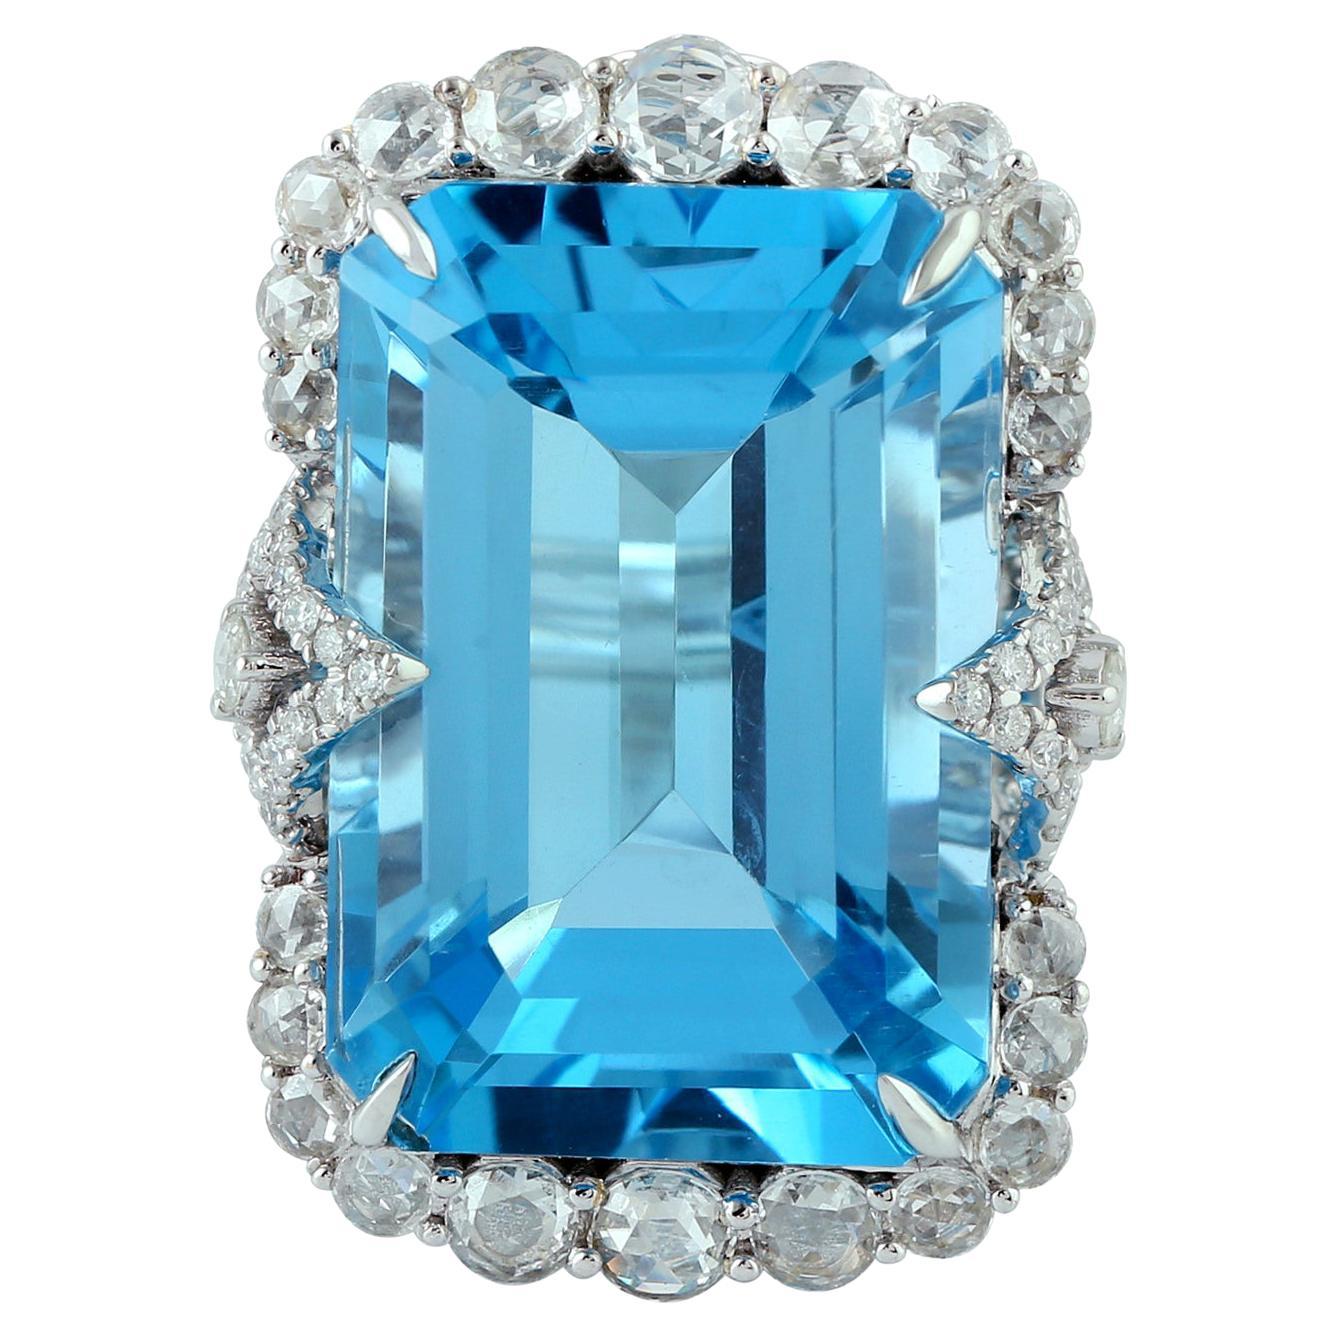 30.88 Carat Blue Topaz Diamond 18 Karat White Gold Ring